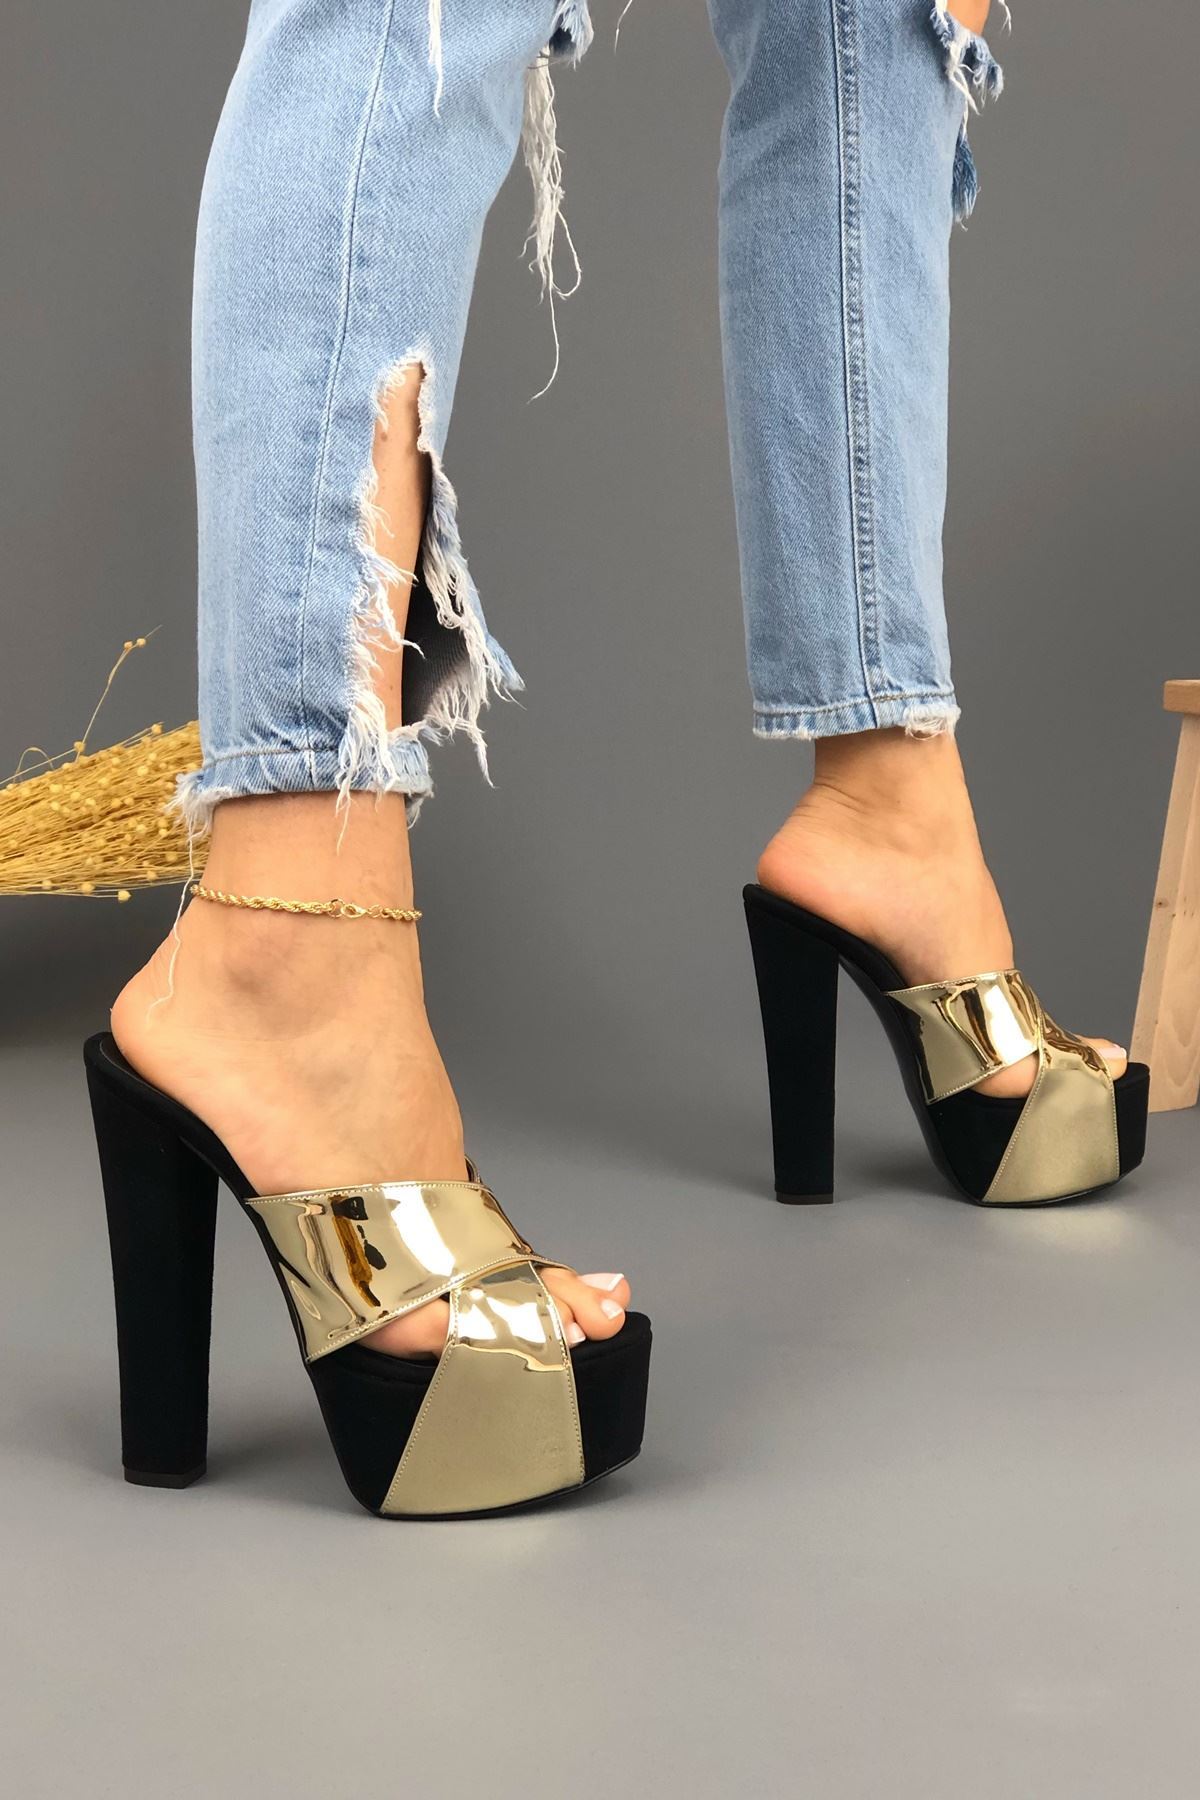 Mulan Siyah - Altın parlak Kadın Yüksek Topuklu Ayakkabı